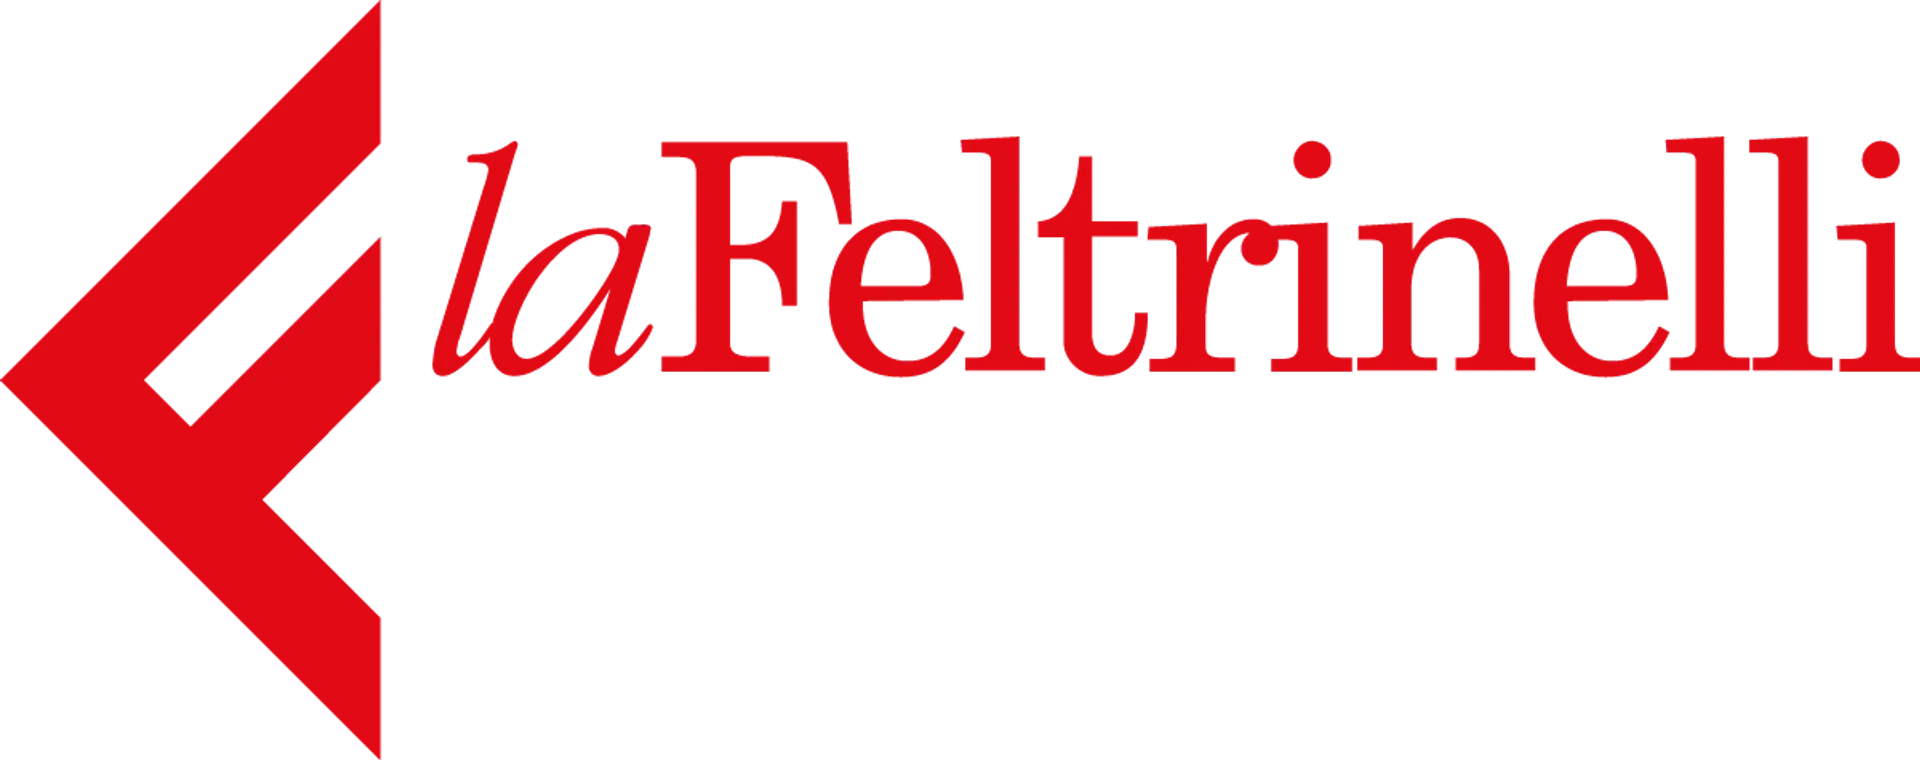 LA FELTRINELLI logo del volantino attuale